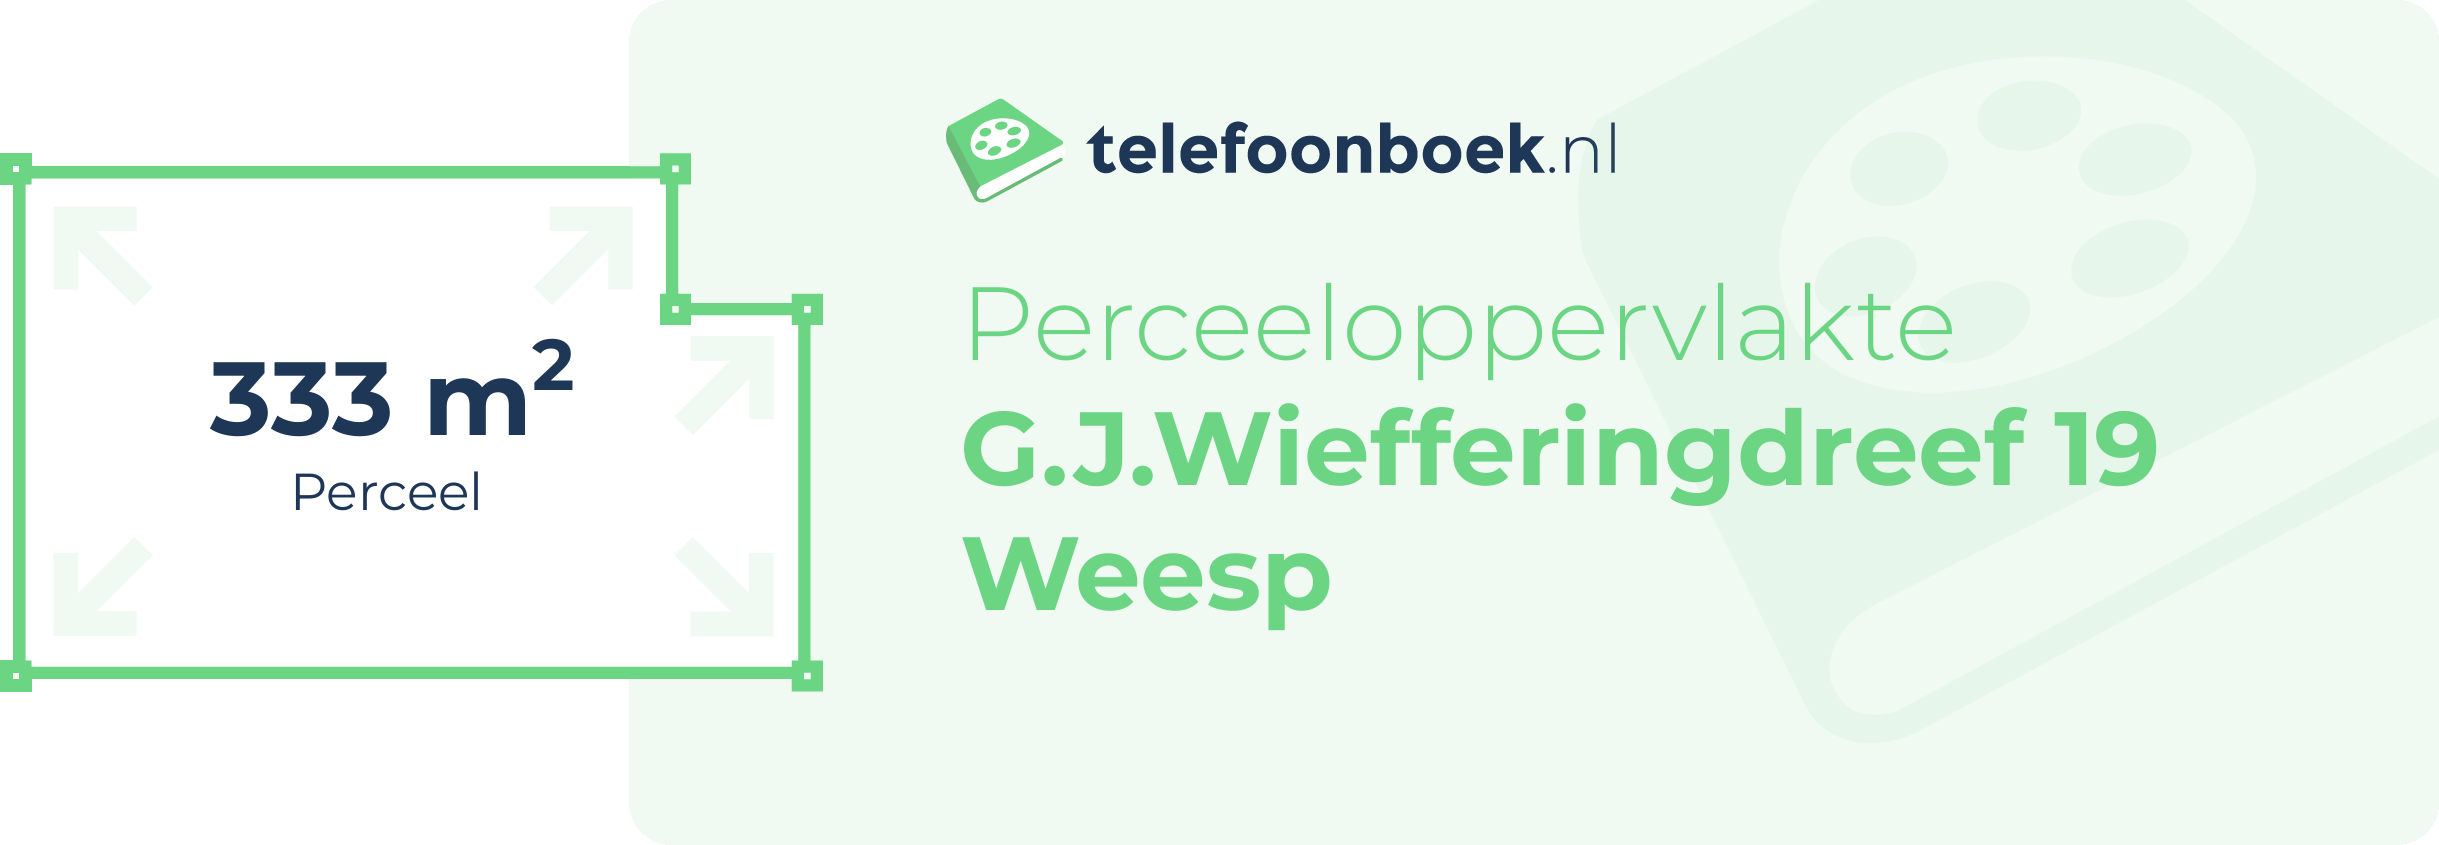 Perceeloppervlakte G.J.Wiefferingdreef 19 Weesp